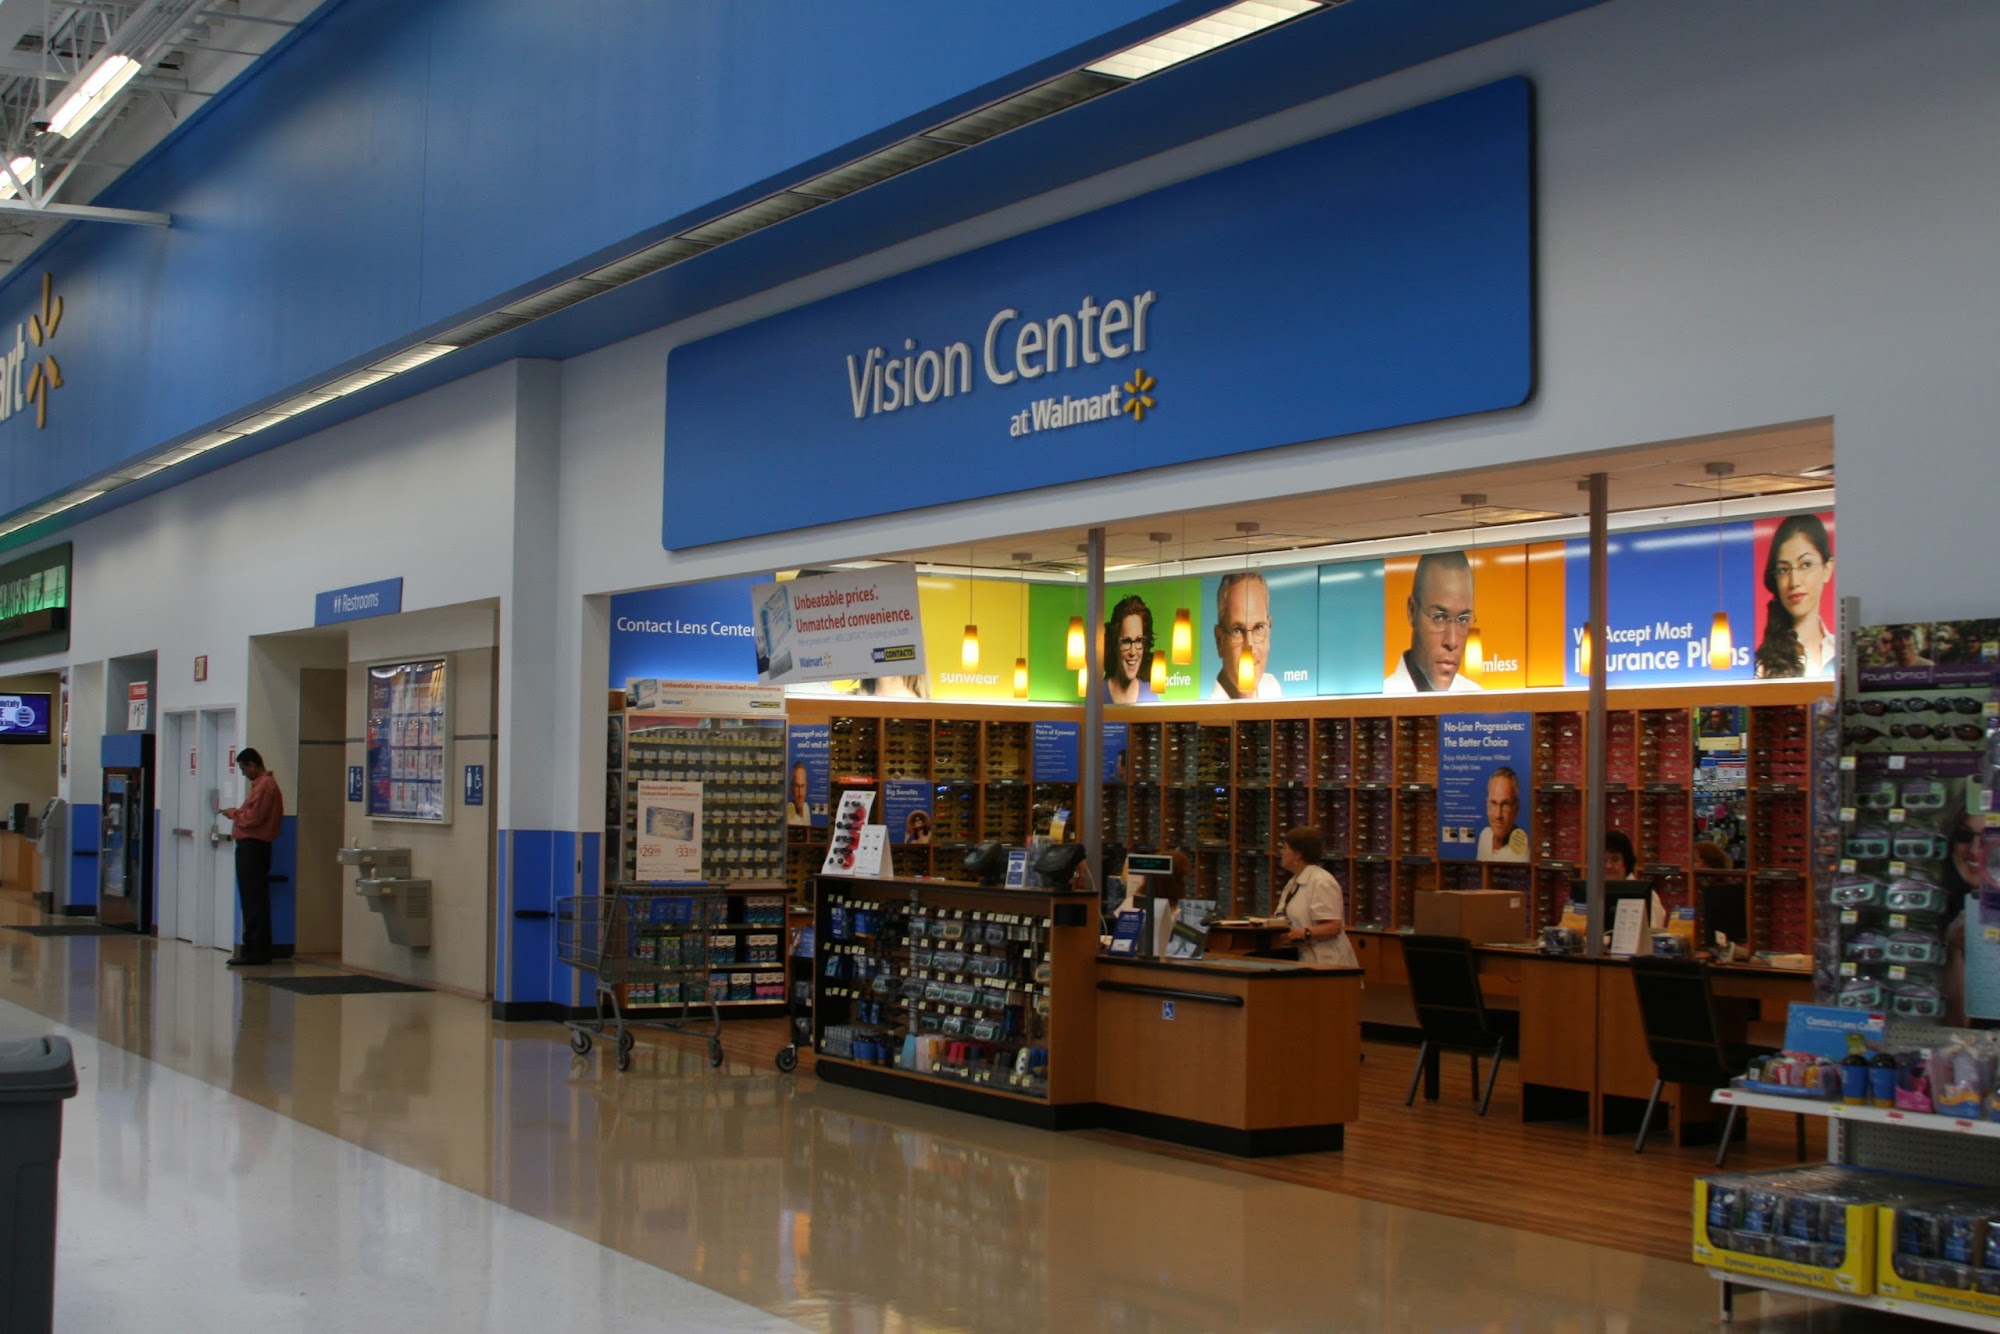 Walmart Vision & Glasses 1424 US-2, Devils Lake North Dakota 58301